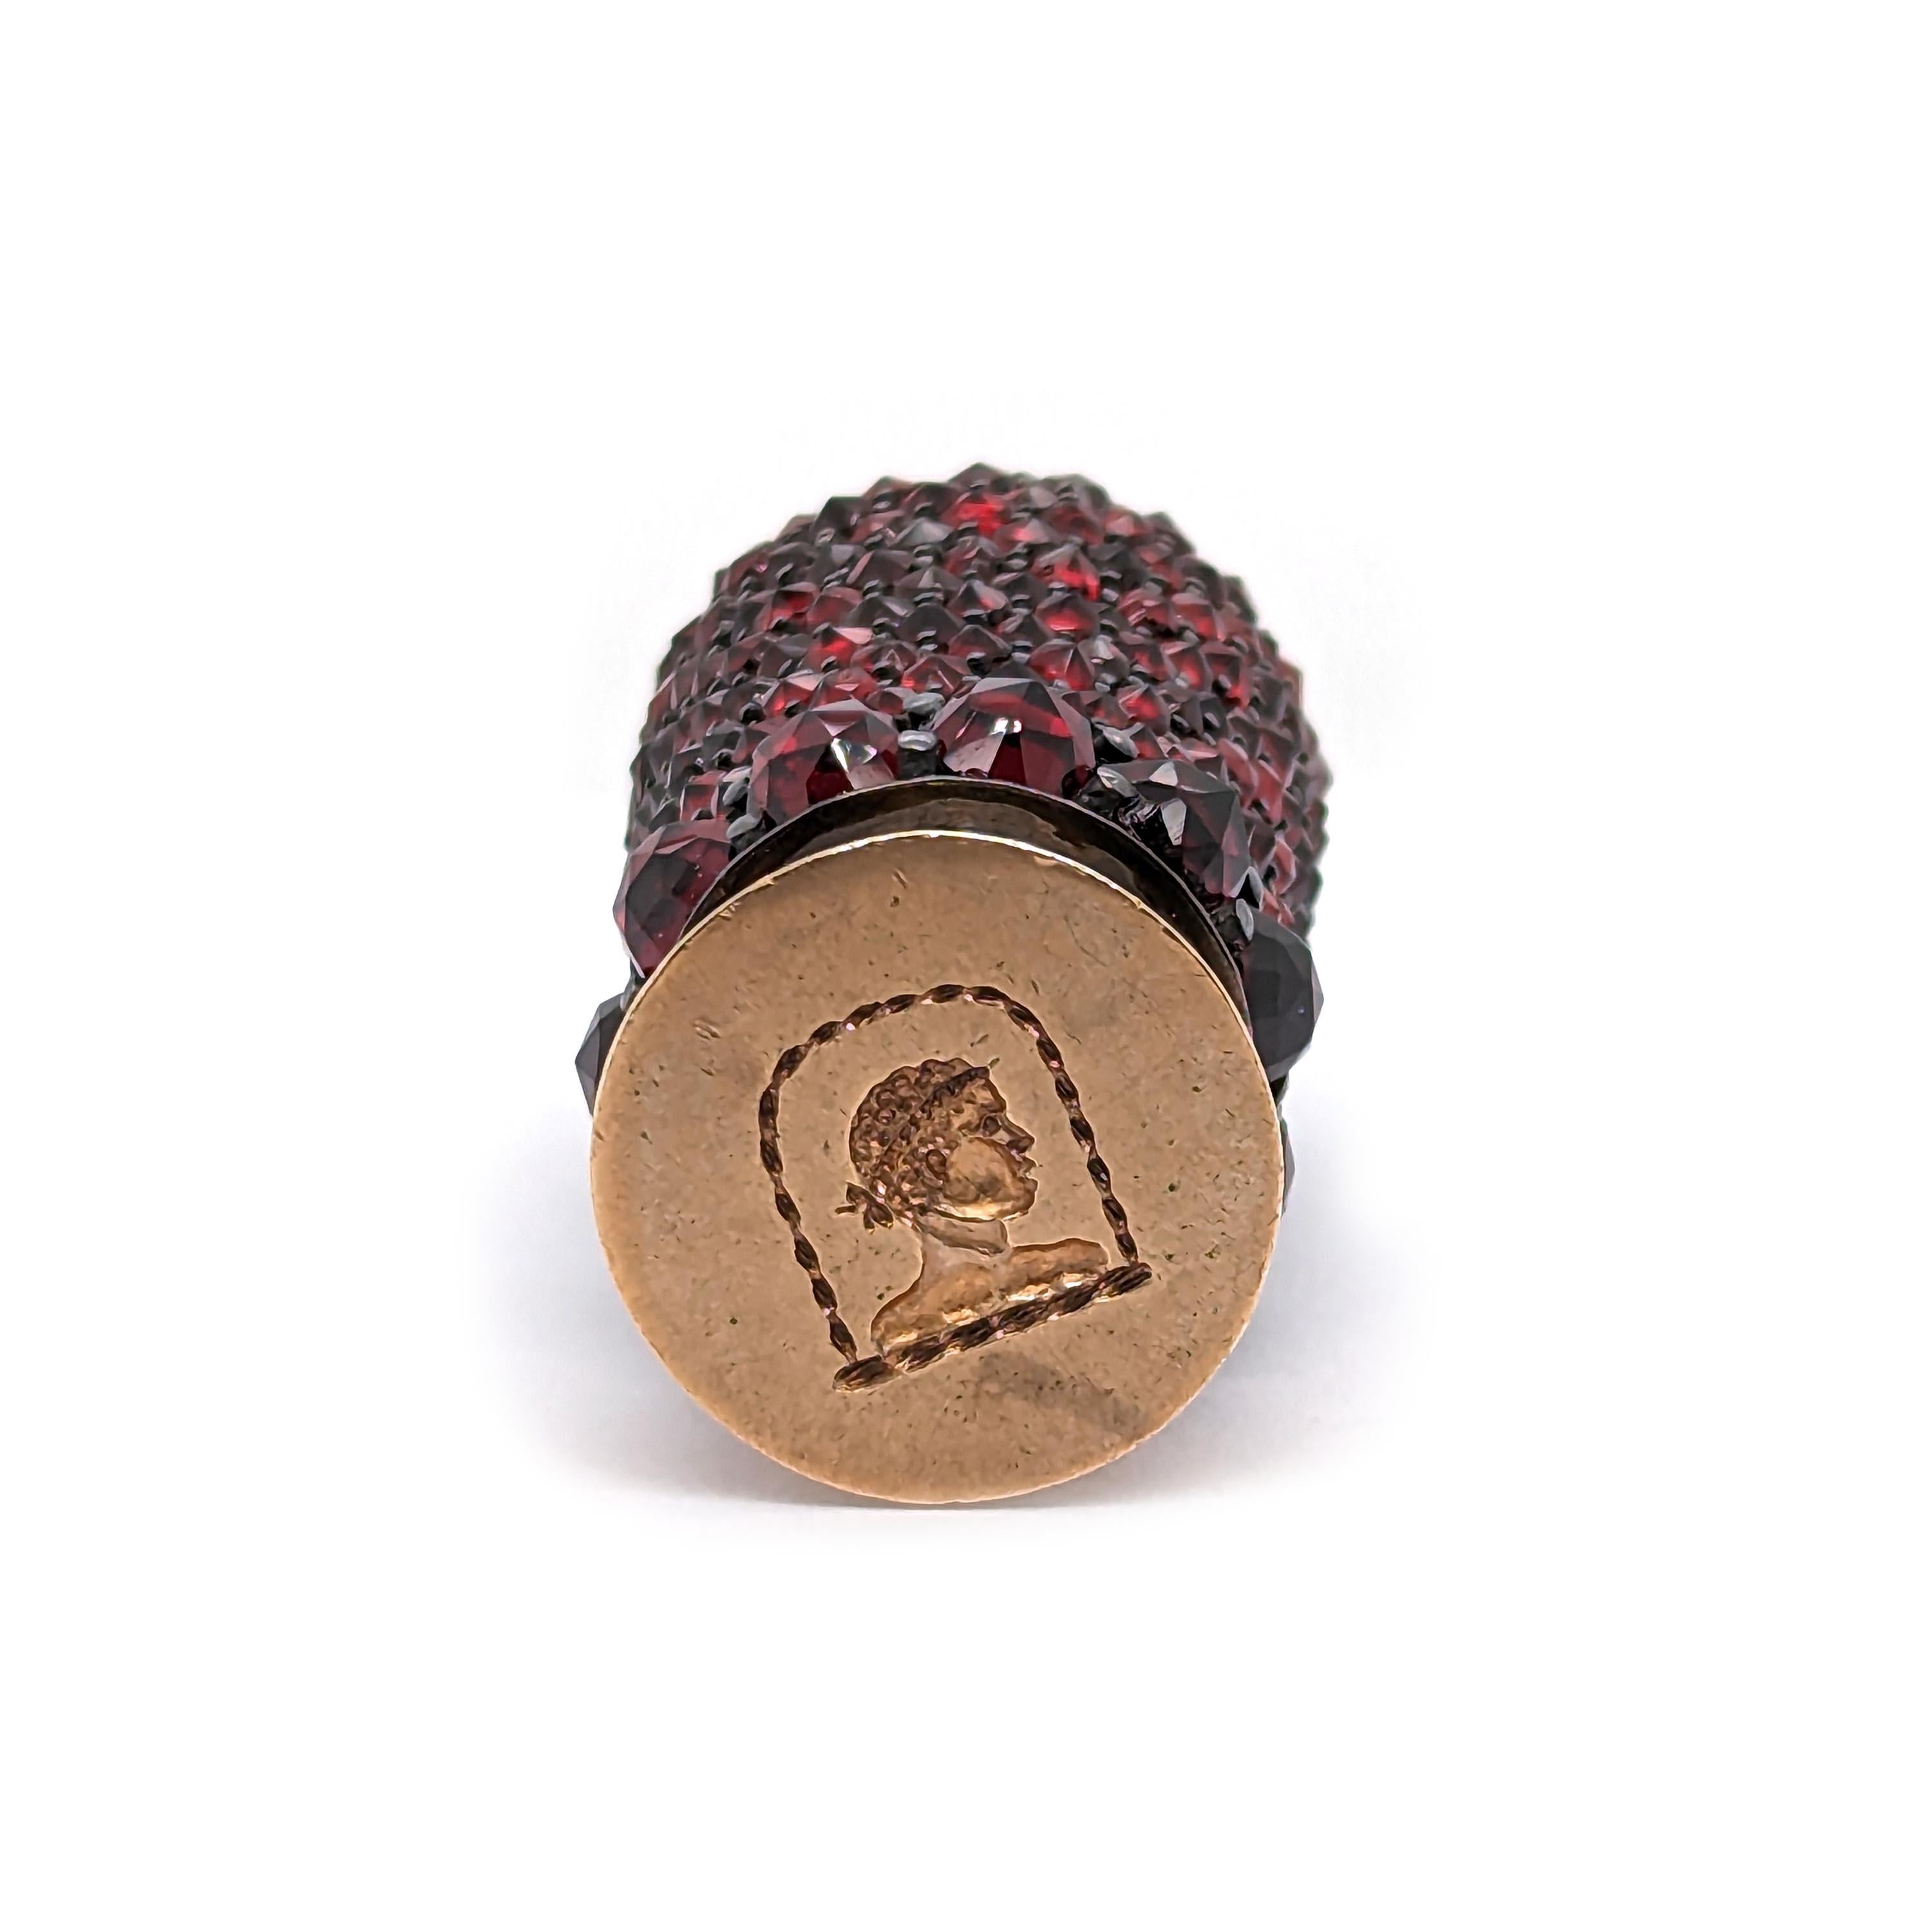 Sceau de bureau ancien serti de grenats, avec des grenats roses pavés sur le manche, monté en argent, avec un sceau en or, gravé d'une tête d'homme, avec une coiffure romaine, vers 1850.